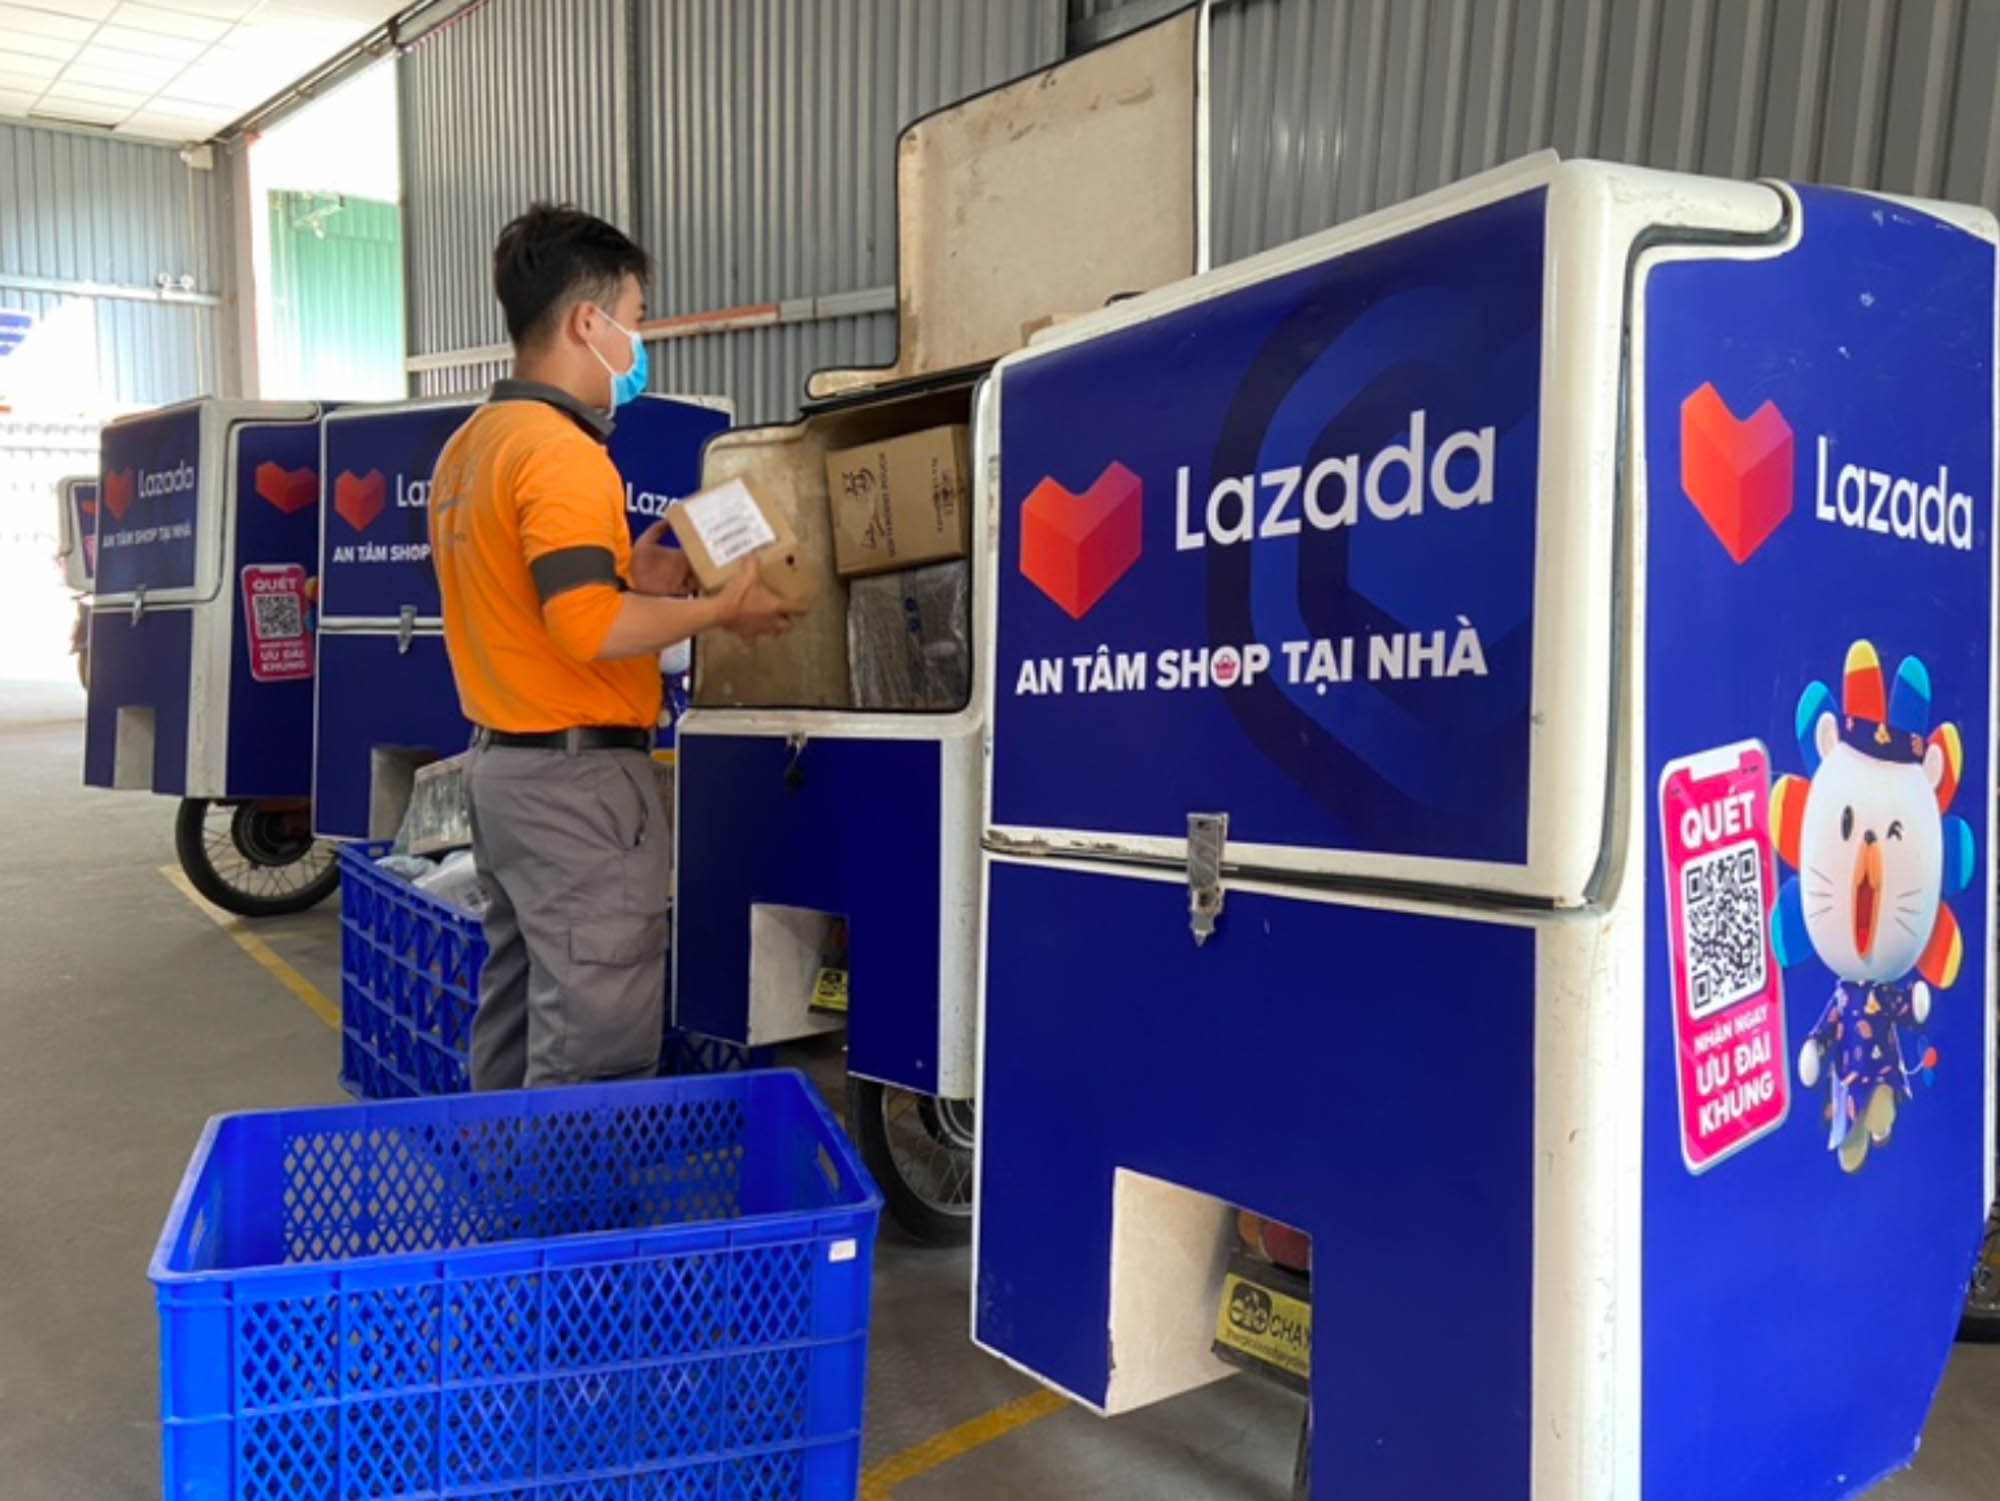 Lazada triển khai giải pháp giao hàng không tiếp xúc, tiếp tục nâng cao trải nghiệm an tâm mua sắm tại nhà cho người tiêu dùng